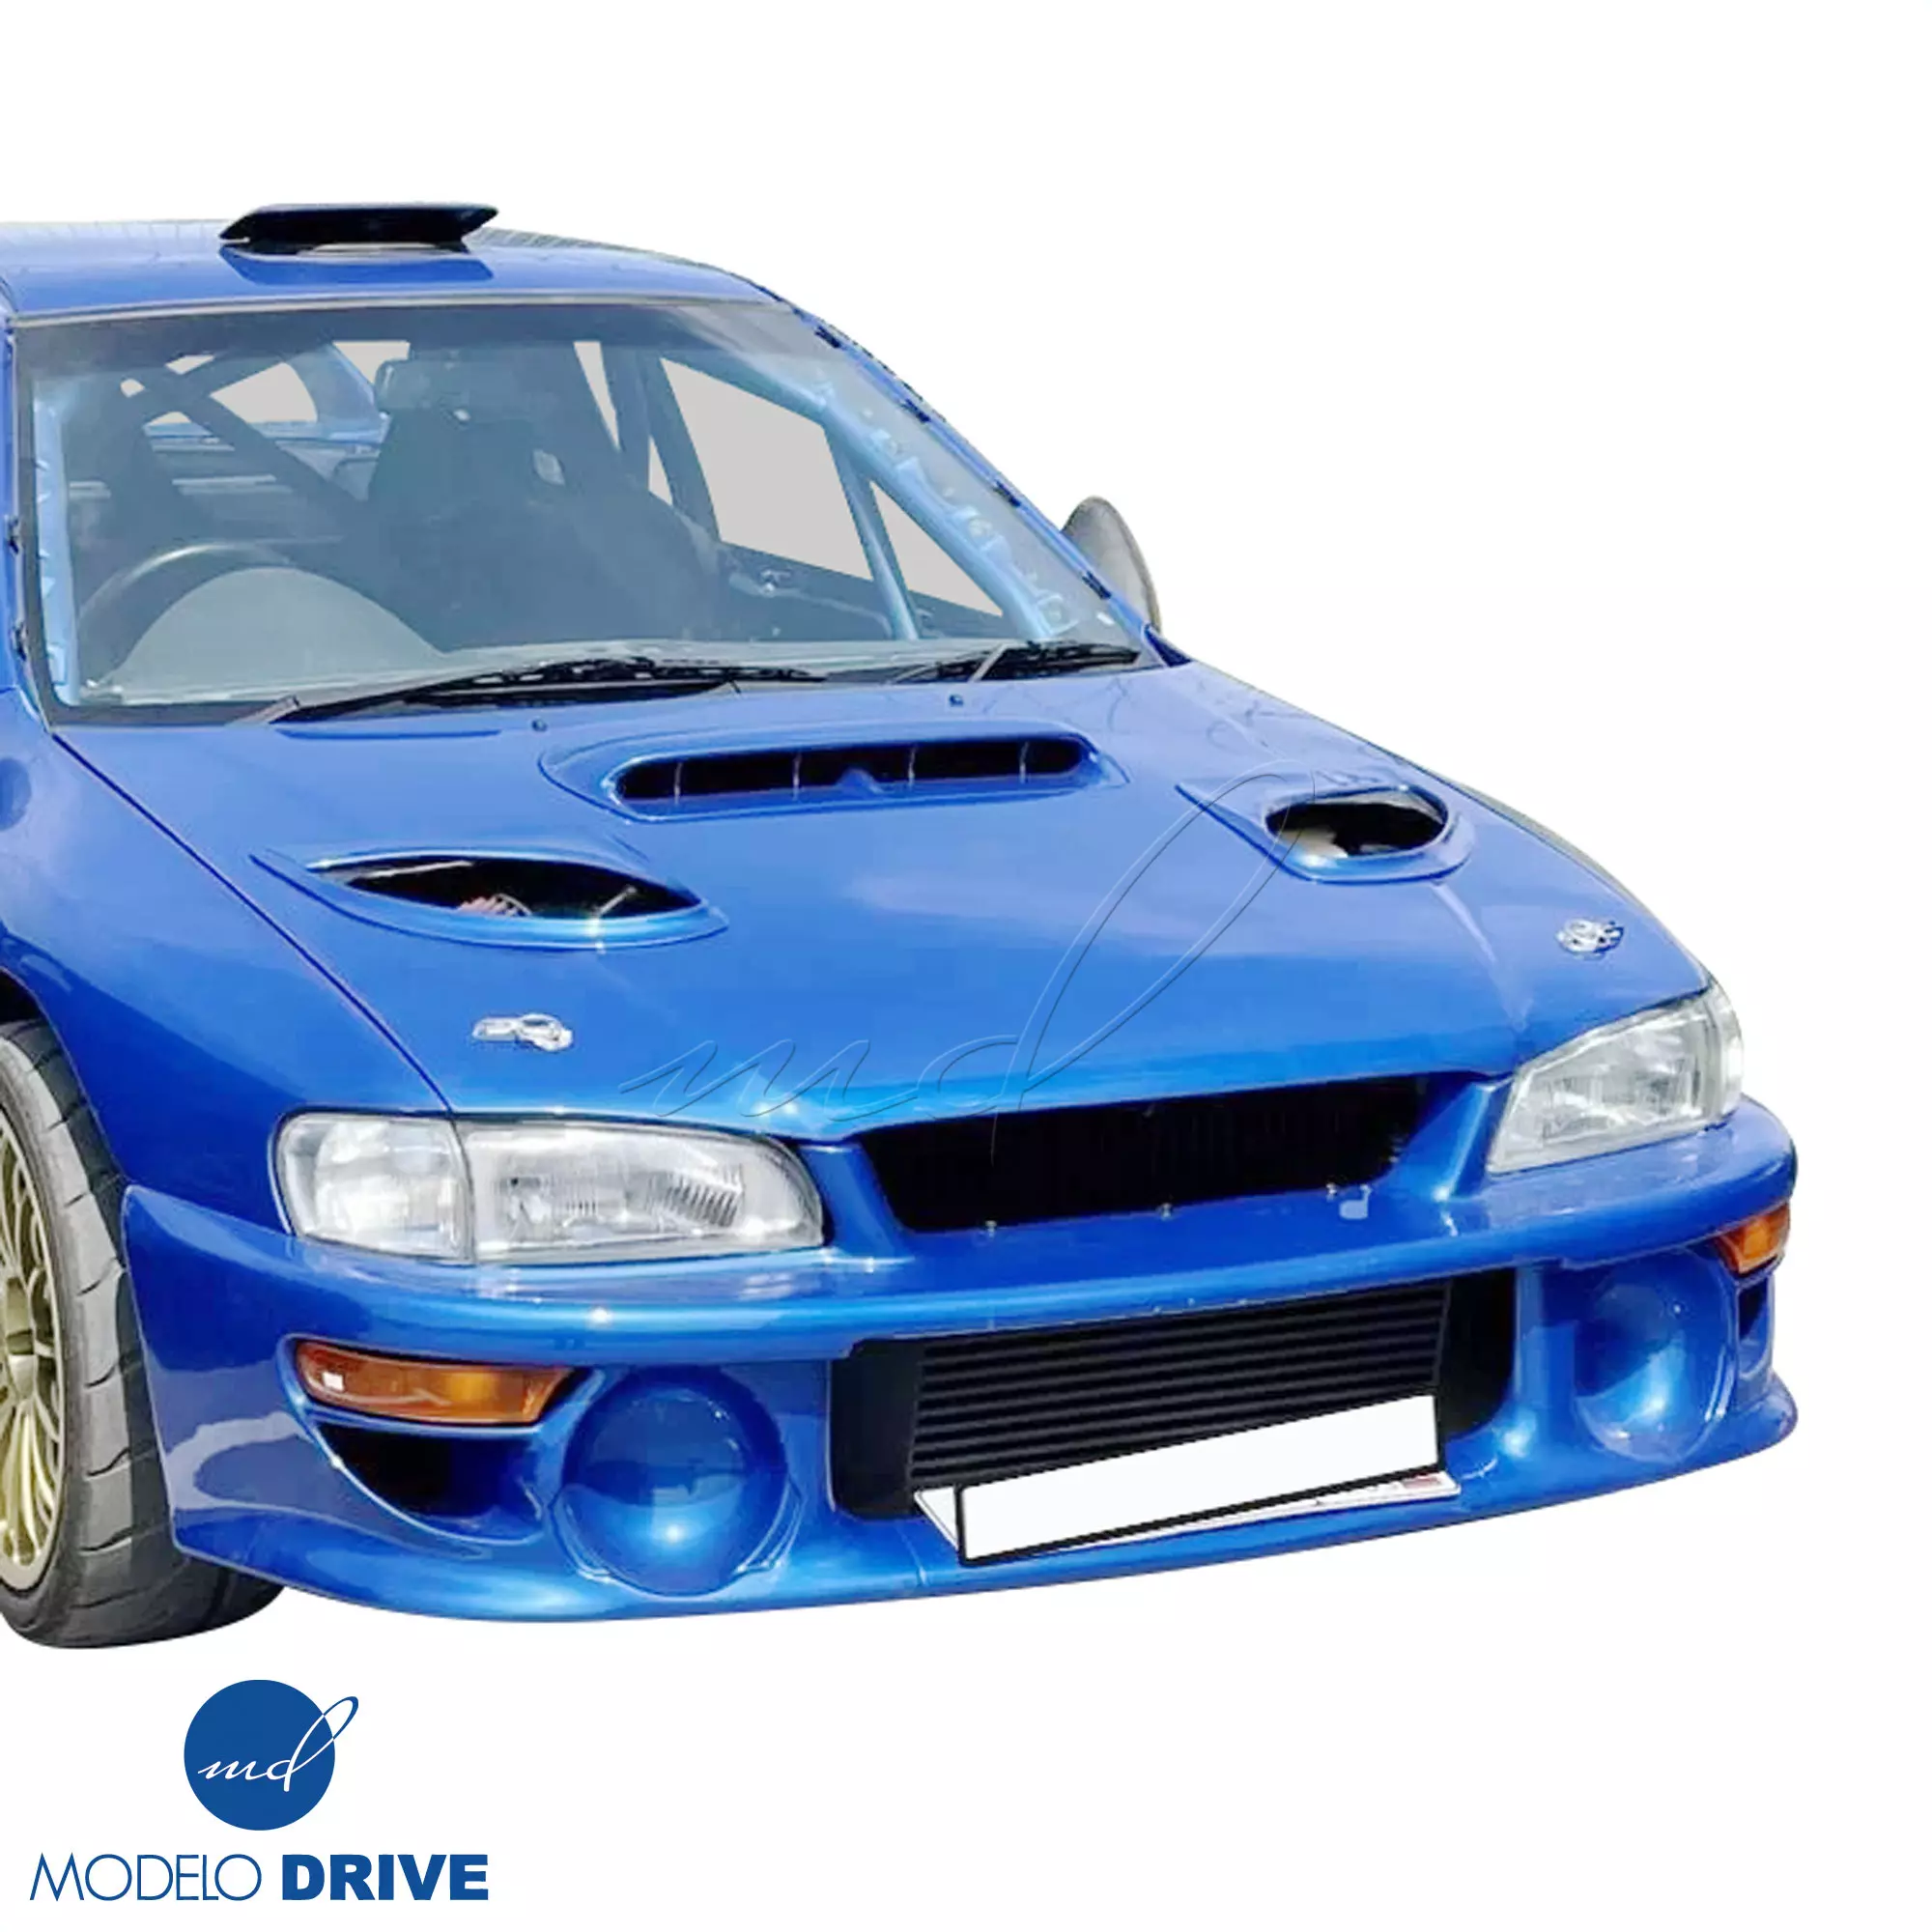 ModeloDrive FRP LS WRC 00 Front Bumper w Caps 3pc > Subaru Impreza (GC8) 1993-2001 > 2/4dr - Image 9